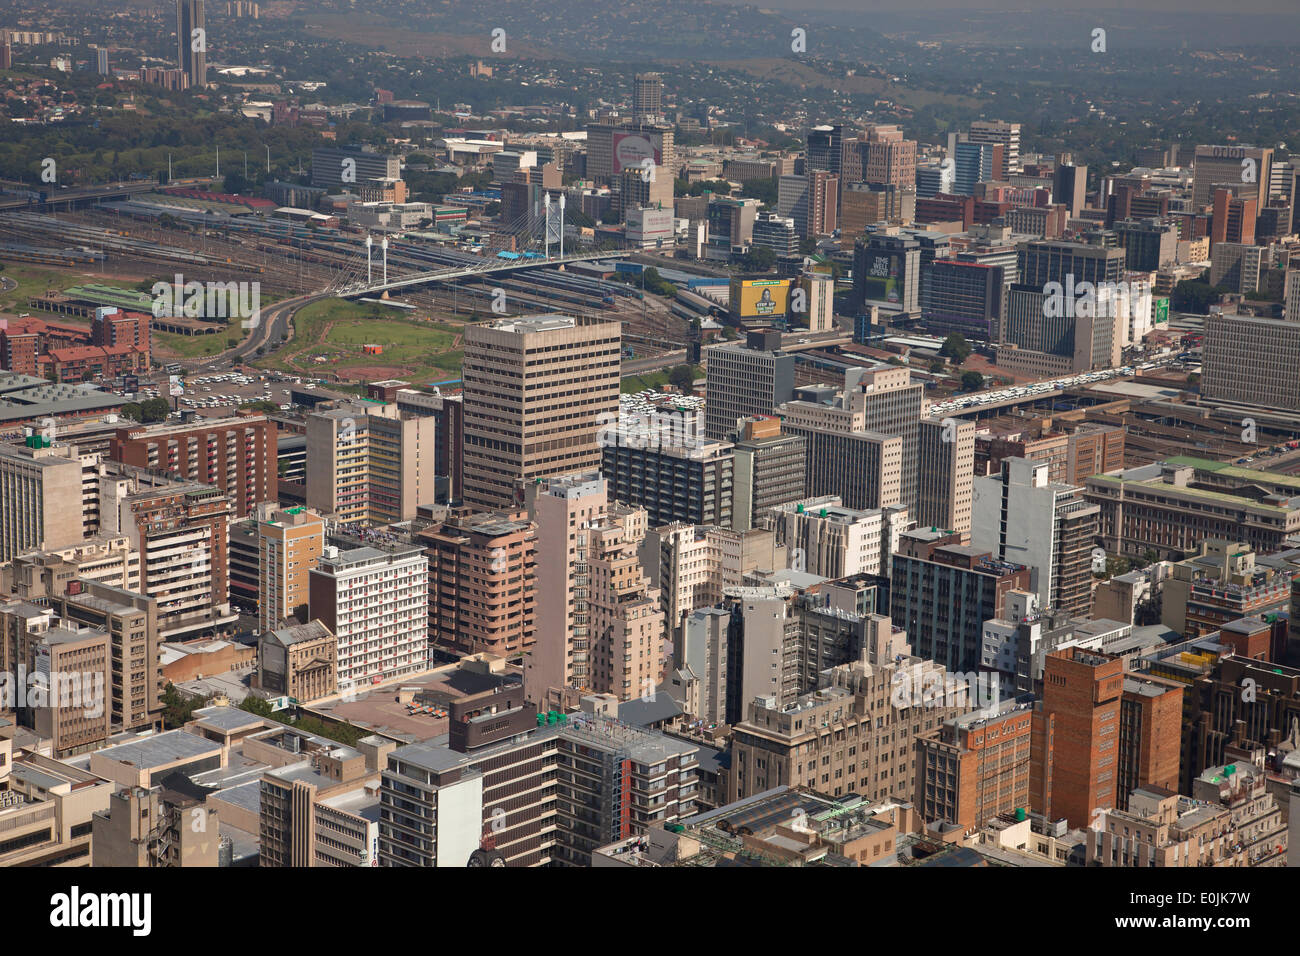 Vue sur le centre de Johannesburg et de la CDB de Carlton Centre Johannesburg, Gauteng, Afrique du Sud, l'Afrique Banque D'Images